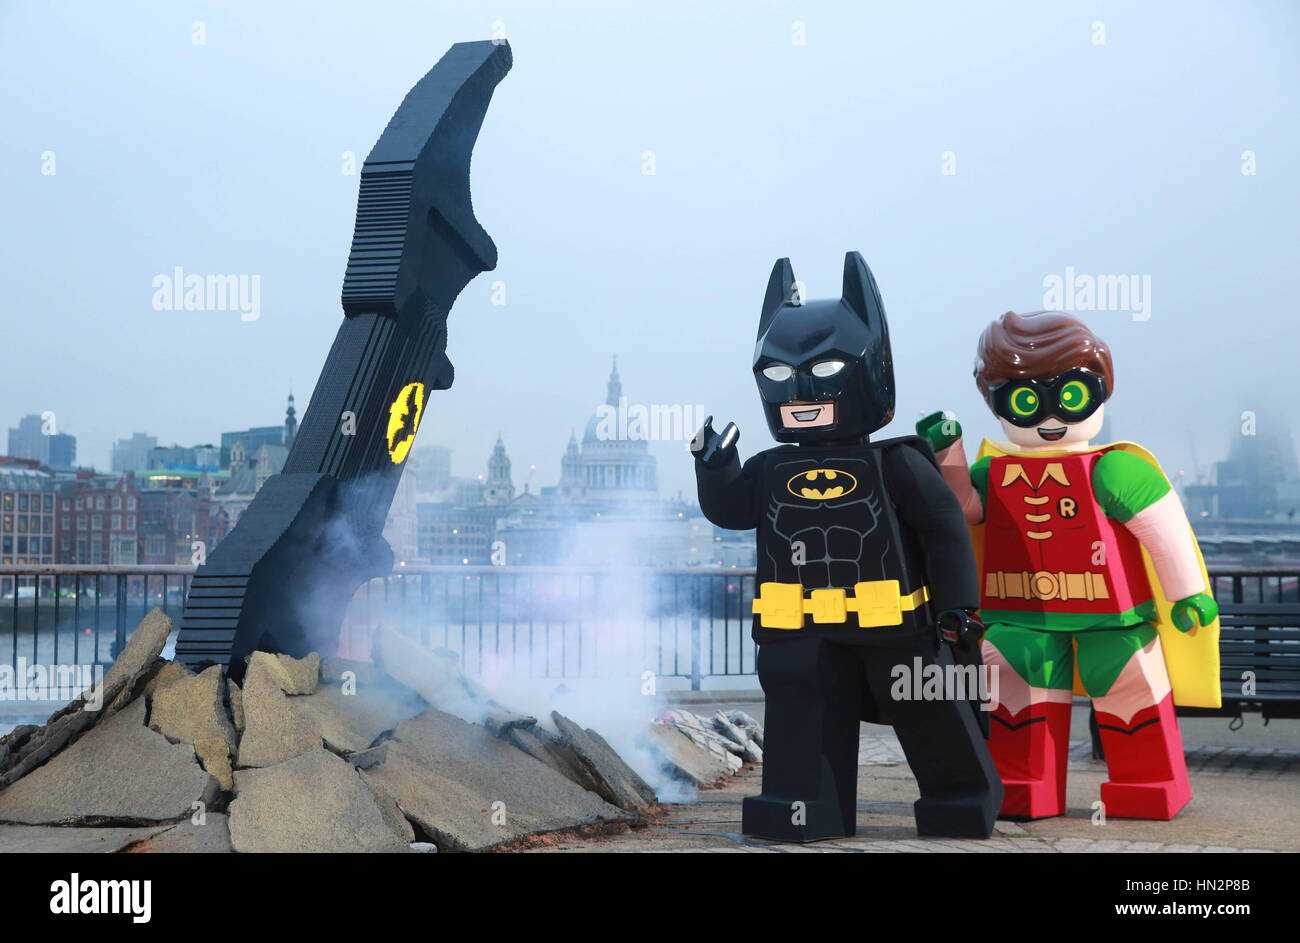 Sólo para uso editorial LEGO Batman y Robin caracteres visita un Batarang  de 4 metros de largo hecha de  ladrillos LEGO a medida que entra en  la pantalla hoy a punto